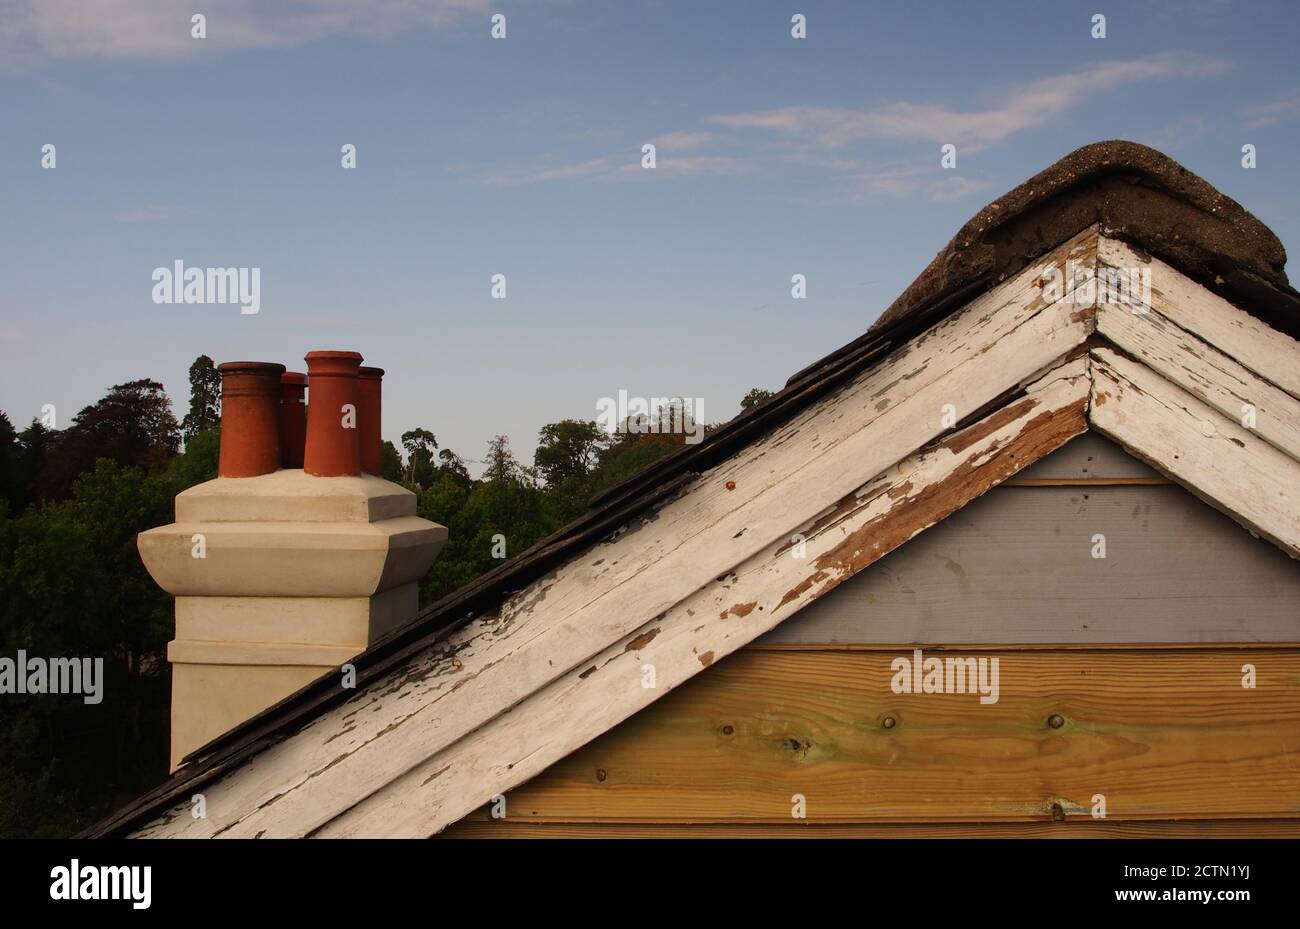 Blick vom Gerüst auf das reparierte Giebelende eines alten Holzhauses mit Schieferdach, das noch lackiert werden muss, plus alte Lastkahn-Bretter Stockfoto